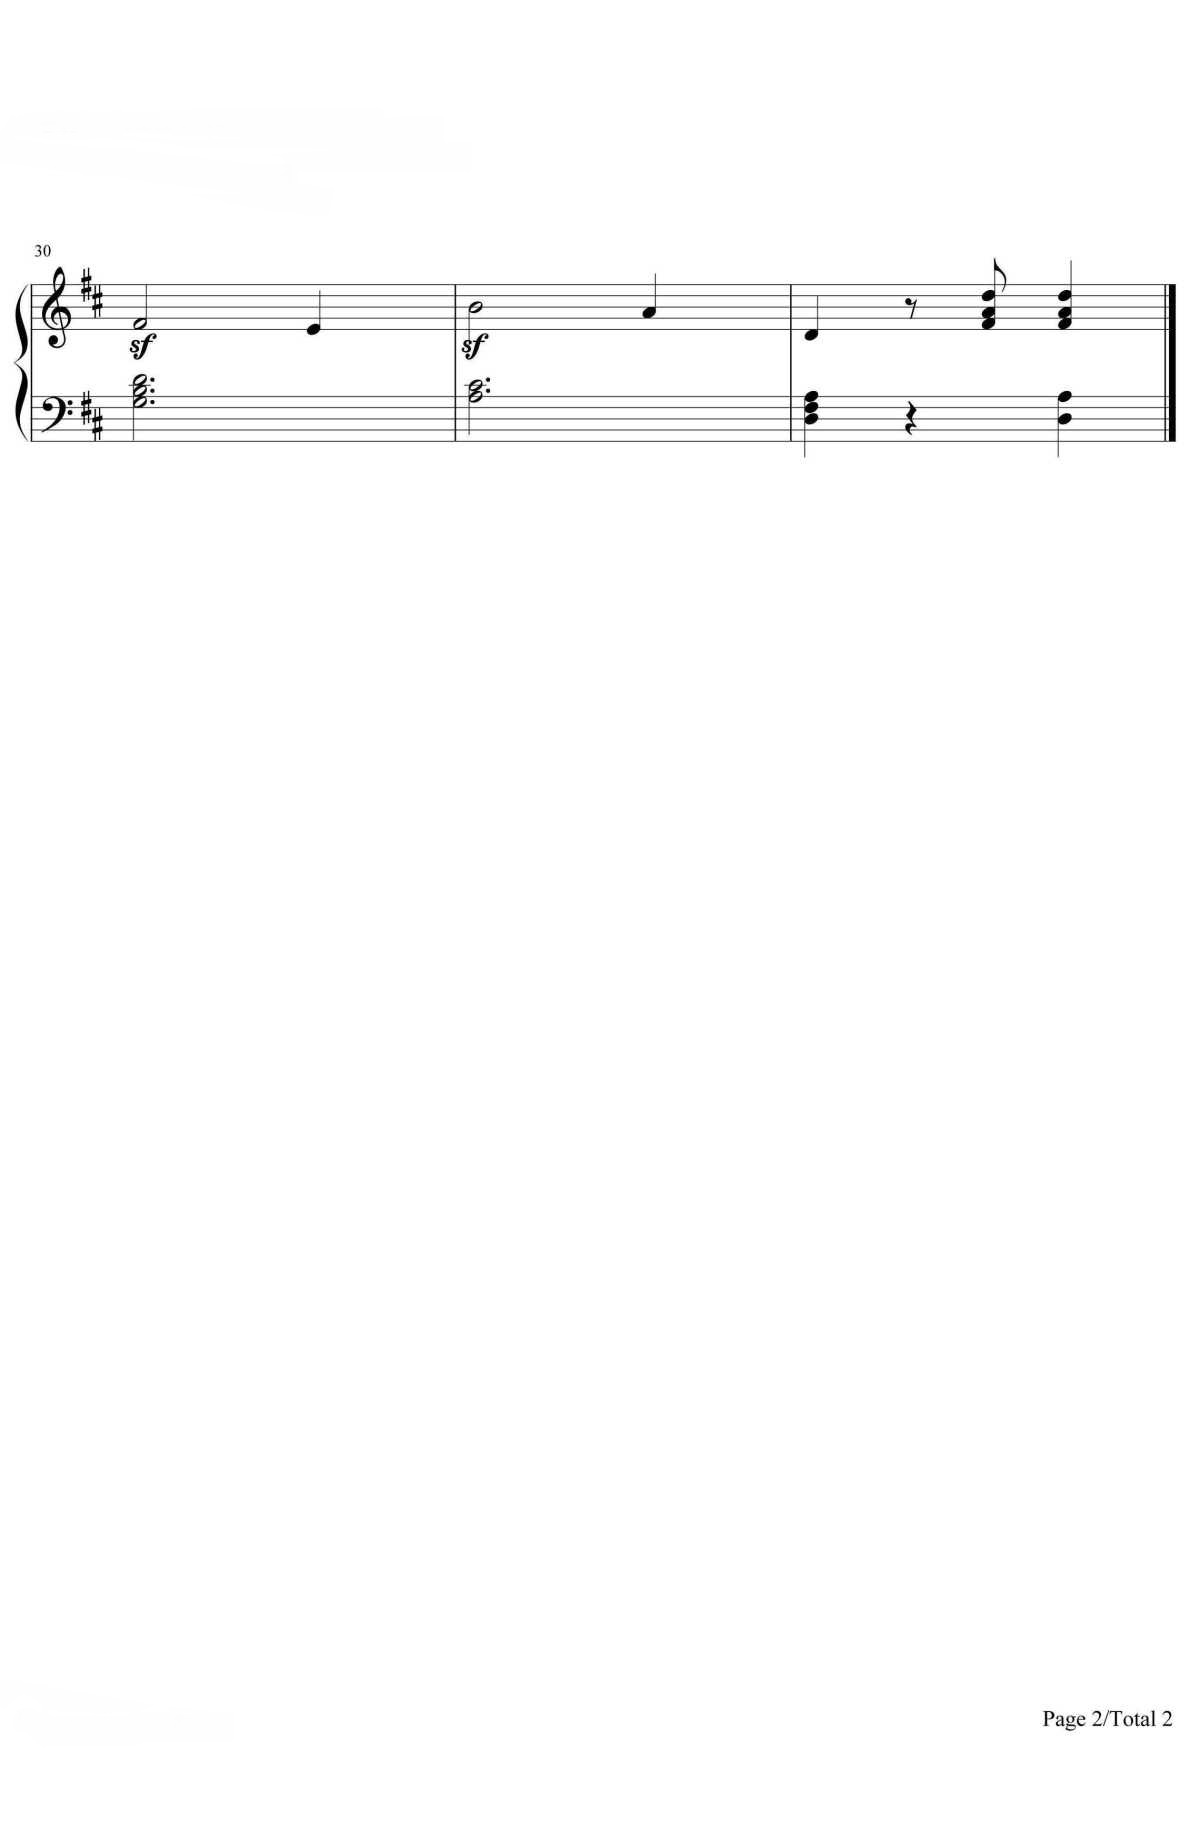 【蓝色多瑙河】的钢琴谱简谱 – 小约翰·施特劳斯
